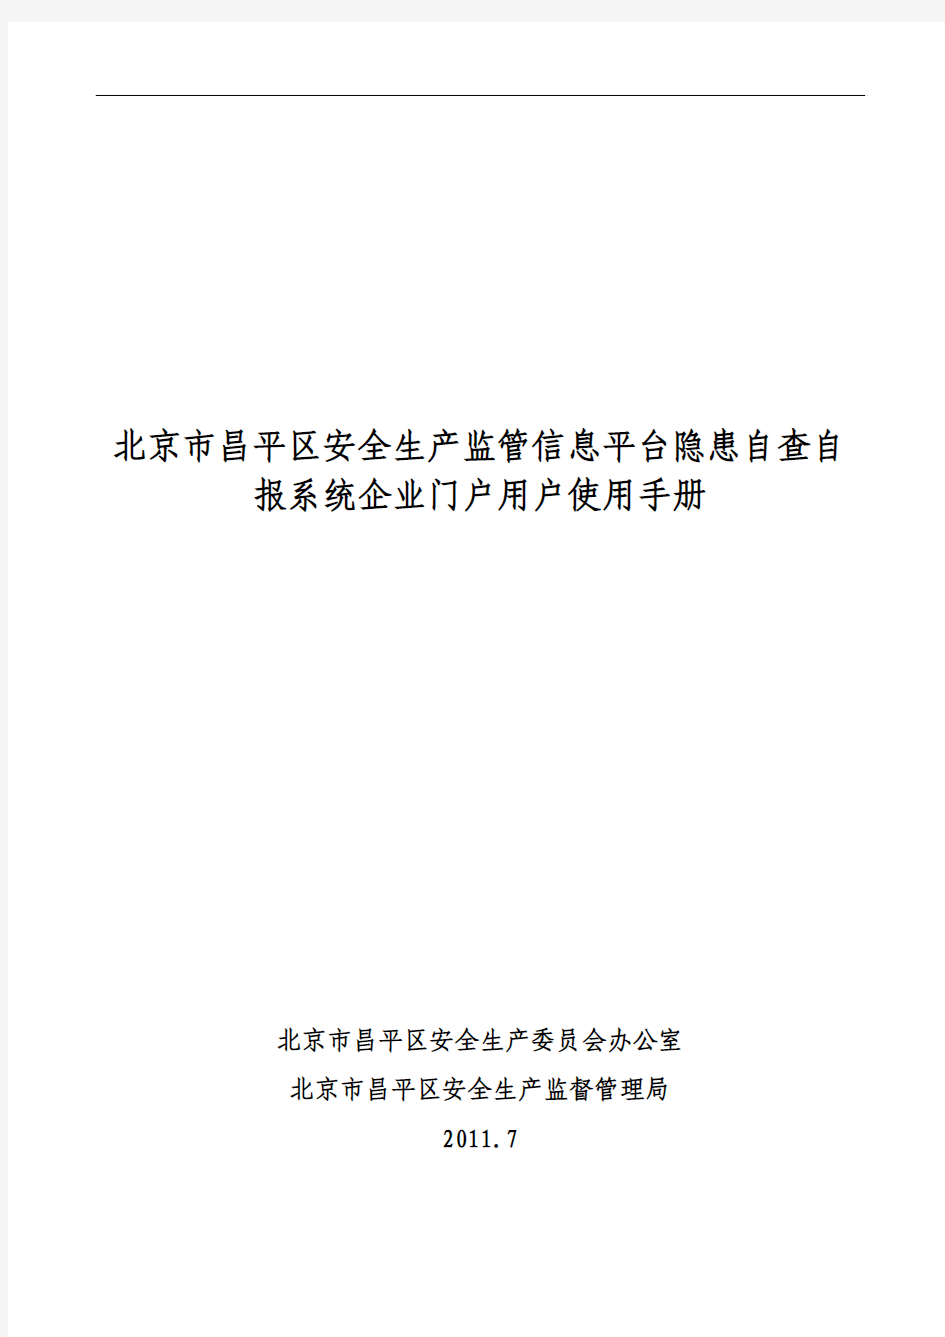 北京市昌平区安全生产监管信息平台隐患自查自报系统企业门户用户使用手册(1)